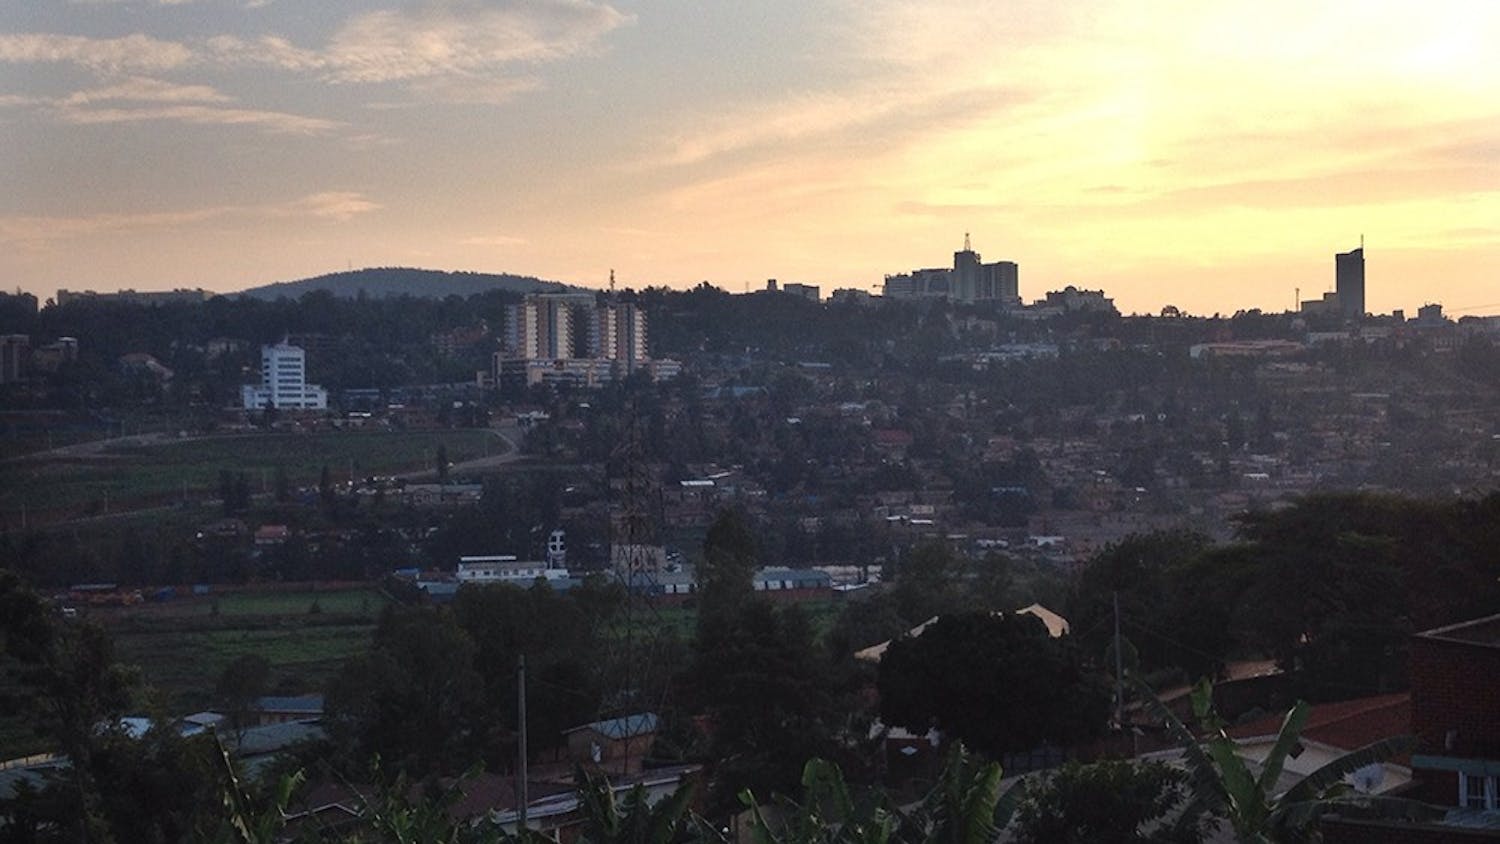 The sun sets over Kigali, Rwanda.